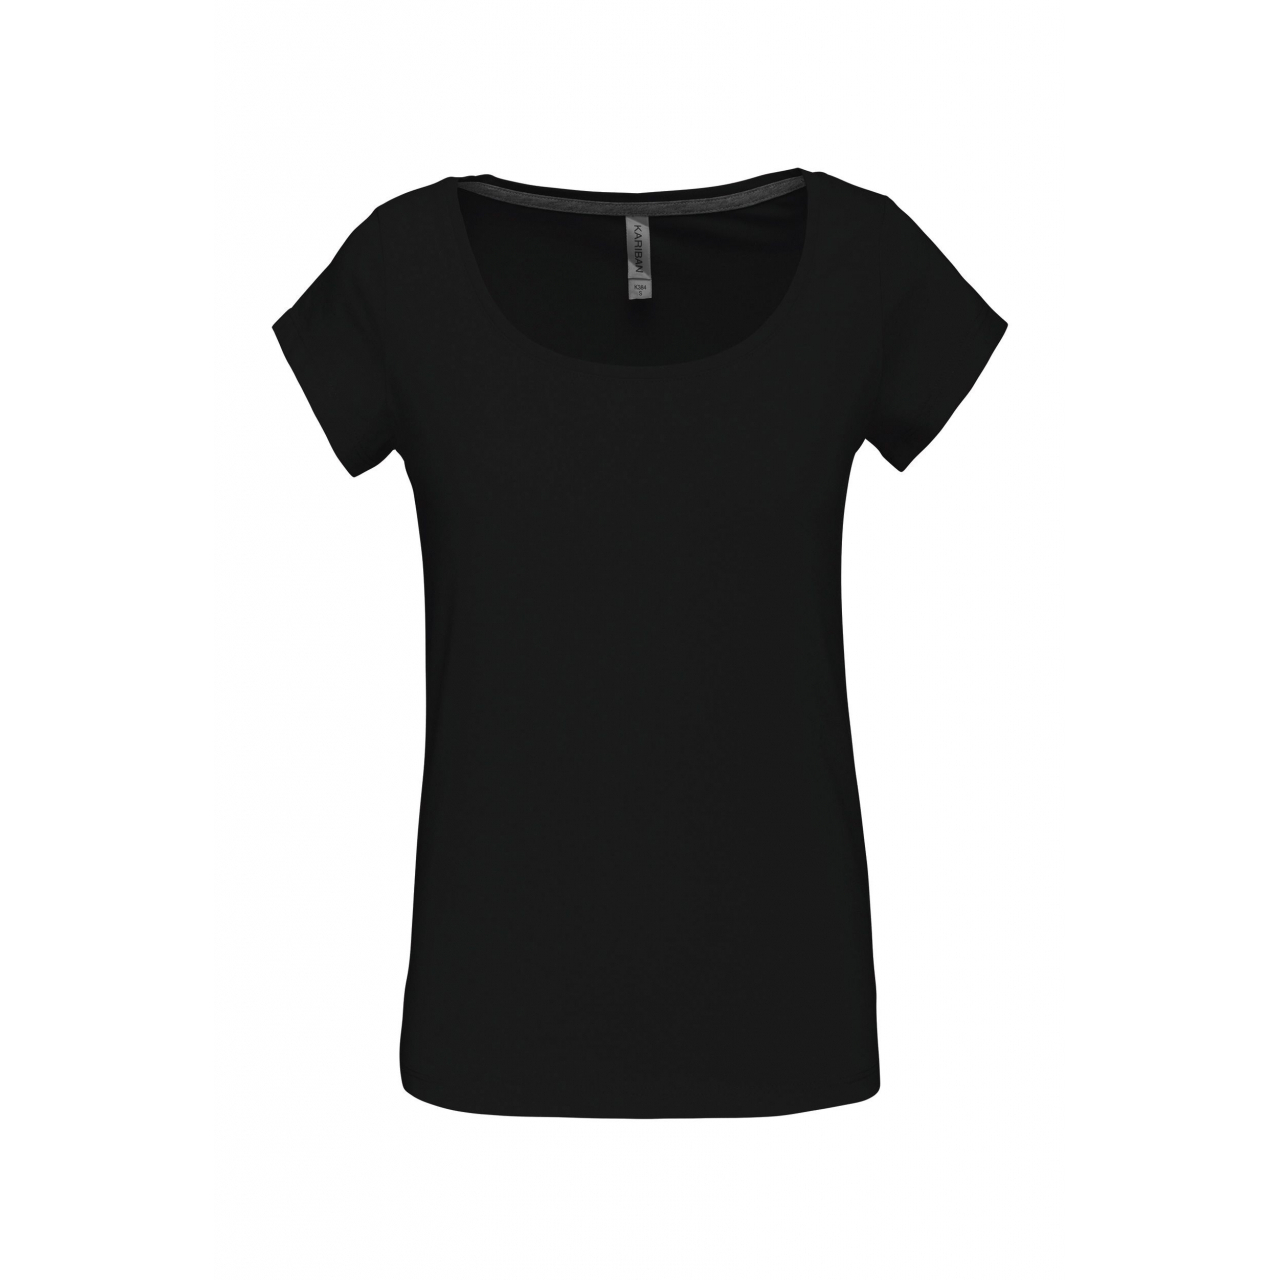 Dámské tričko Kariban s lodičkovým výstřihem - černé, XL